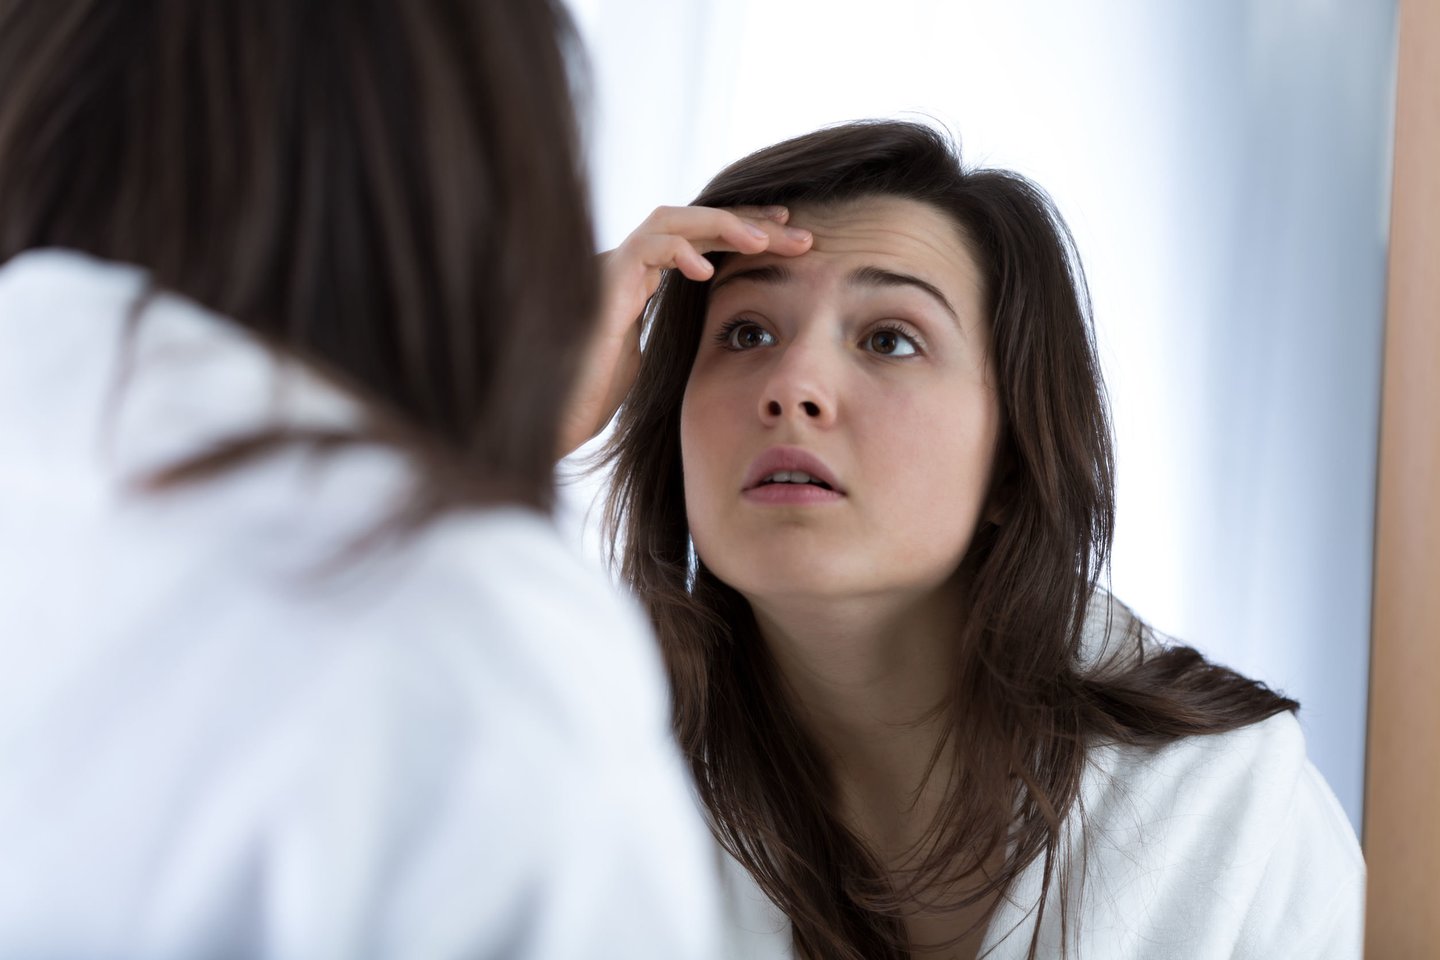 Jeigu staiga suprastėja veido odos būklė, padaugėja spuogų – tai irgi gali signalizuoti, kad intymi sveikata sutriko.<br> 123rf nuotr.